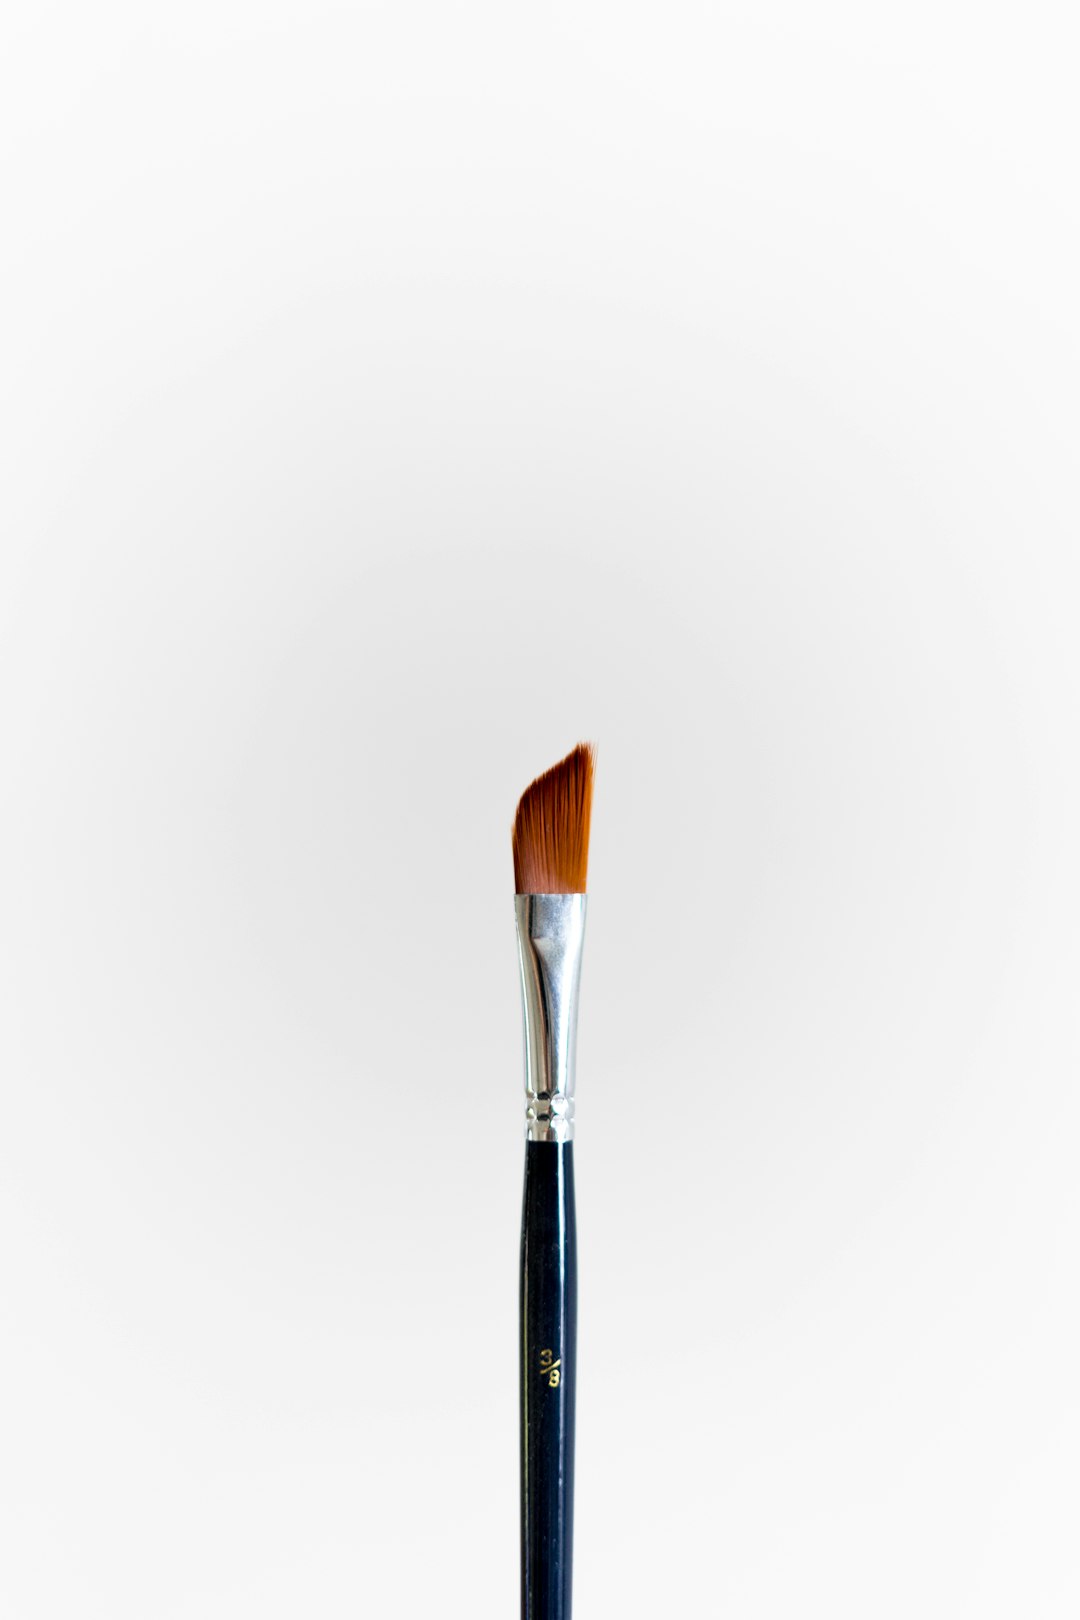  black and brown makeup brush brush